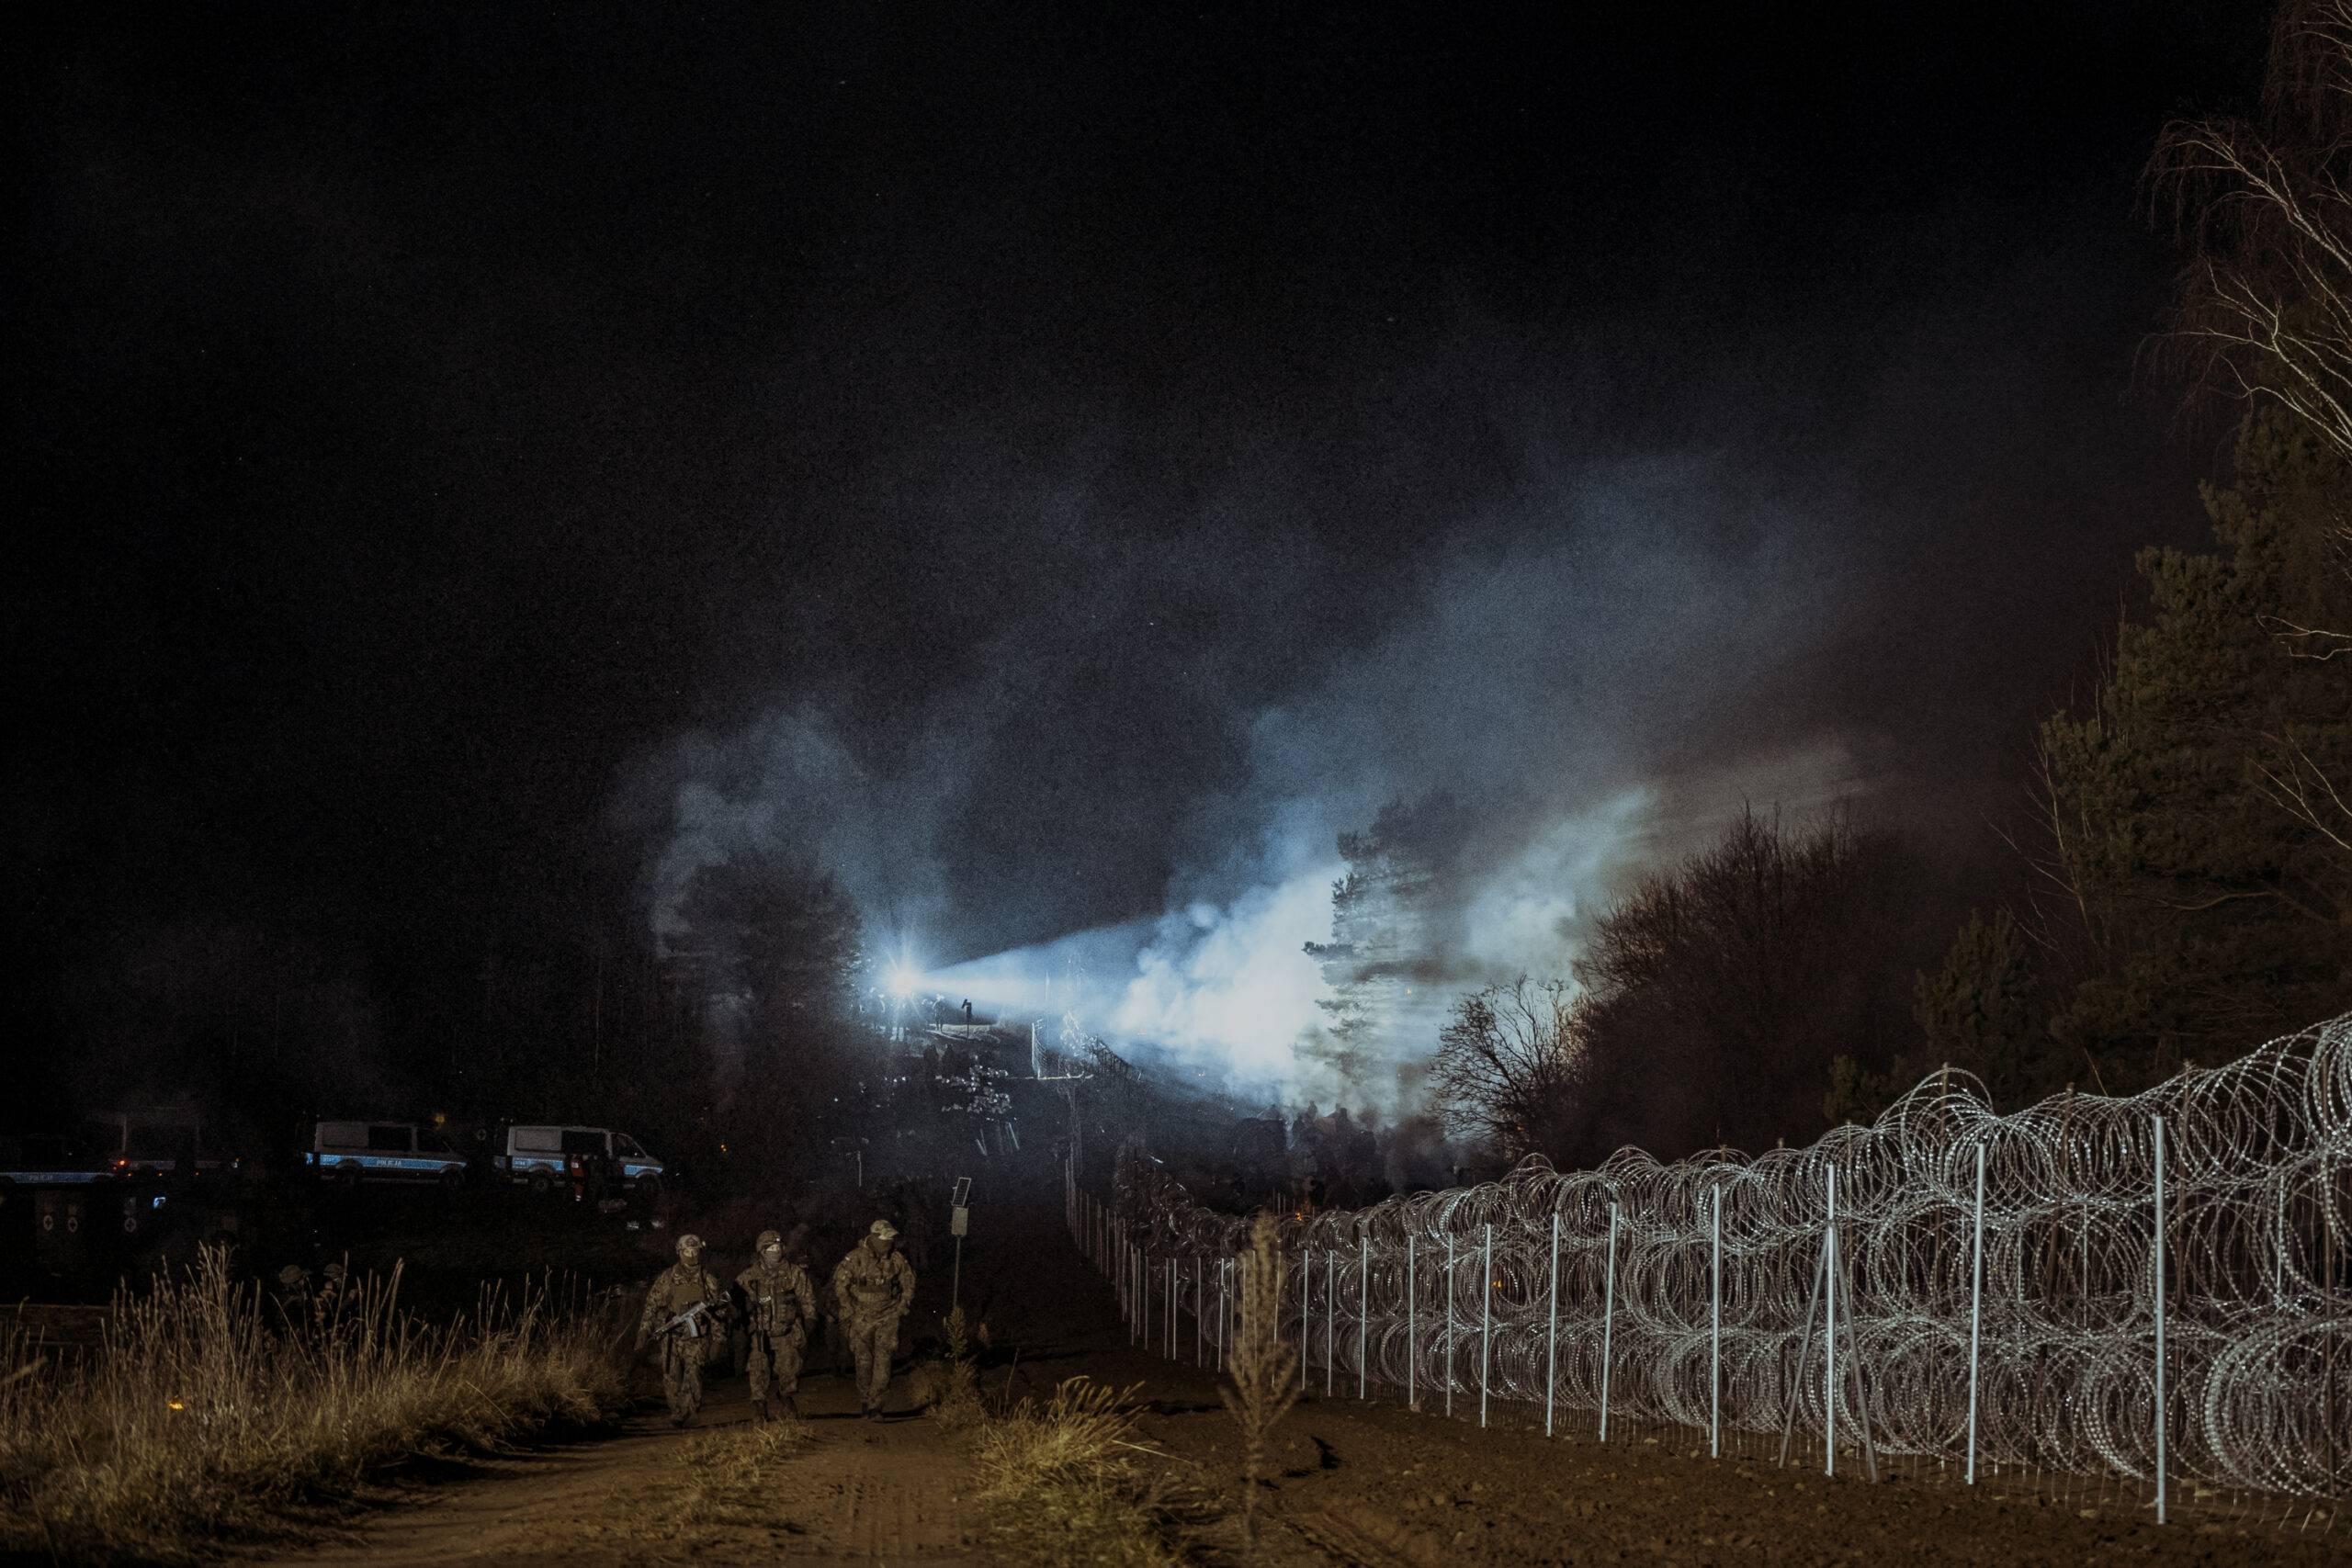 Przejście graniczne Kuźnica. Kryzys migracyjny przy pasie granicznym między Polską a Białorusią. Fot. Bartek Syta.